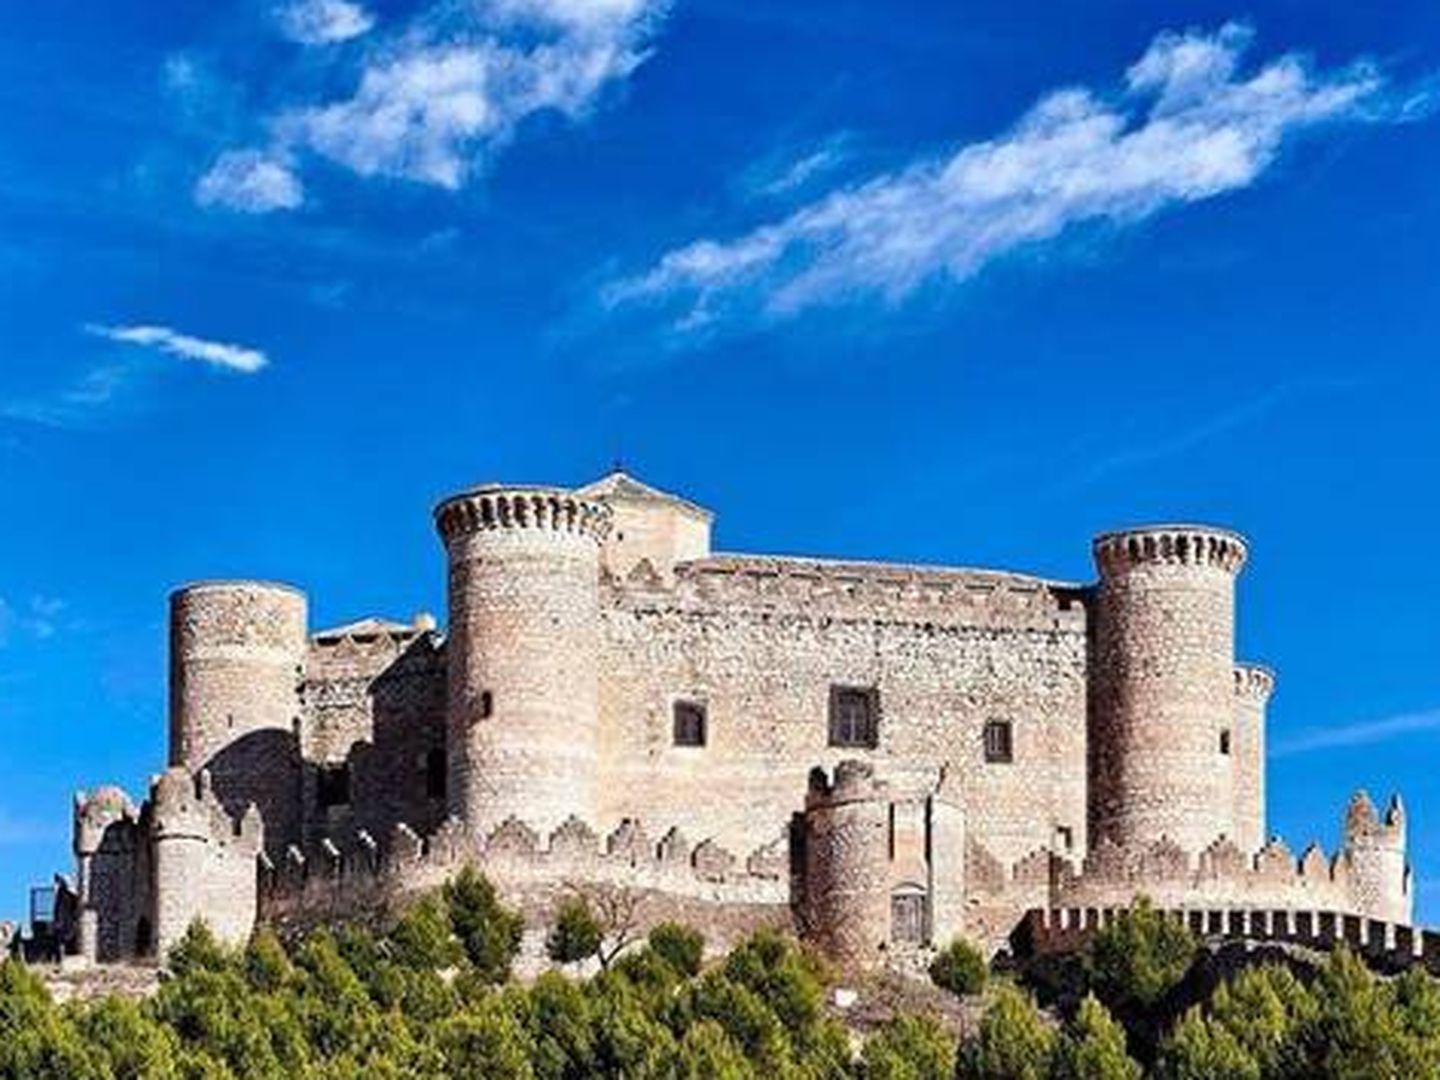 En el castillo de Belmonte hay visitas teatralizadas. (Turismo Castilla-La Mancha)